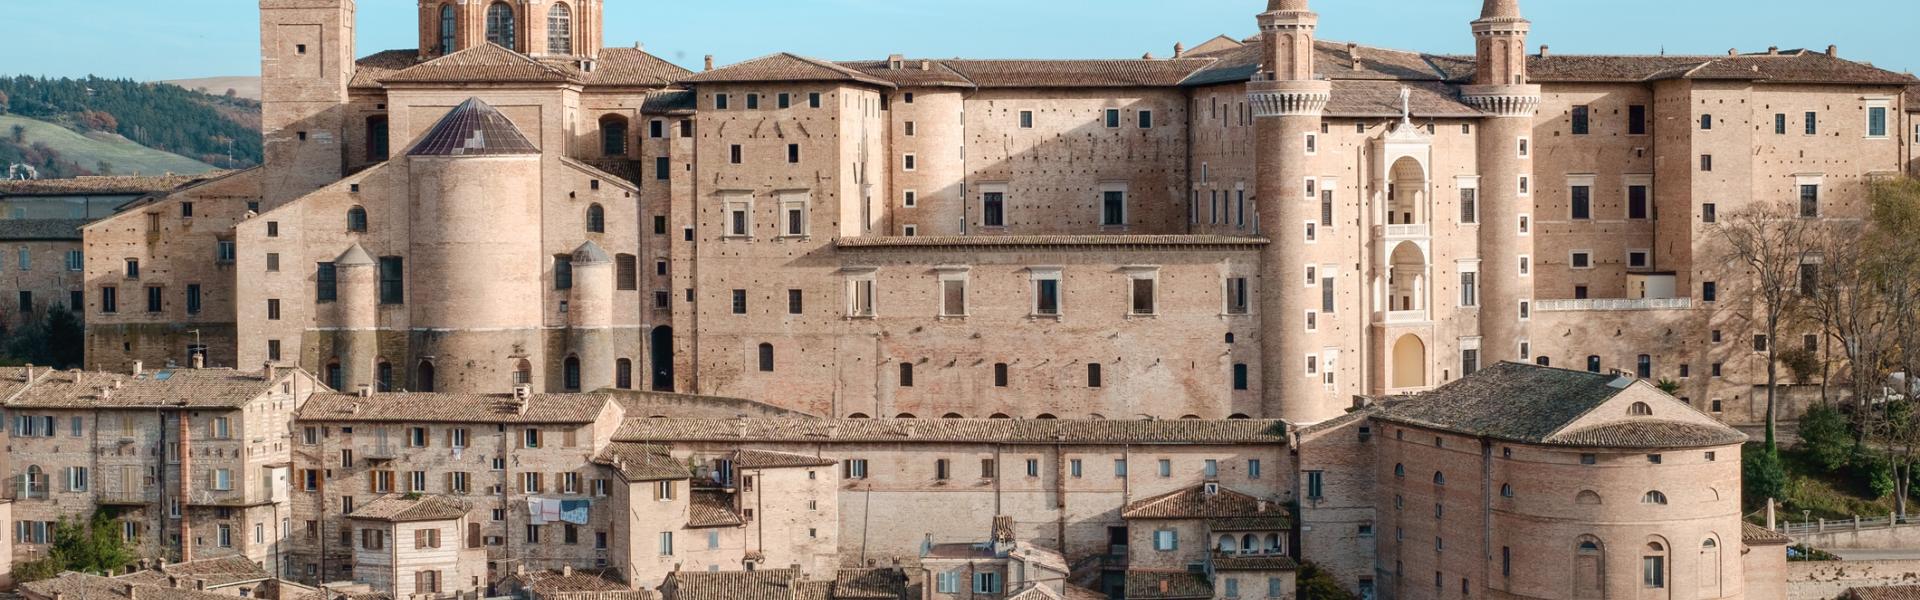 Case vacanze e appartamenti a Urbino in affitto - CaseVacanza.it